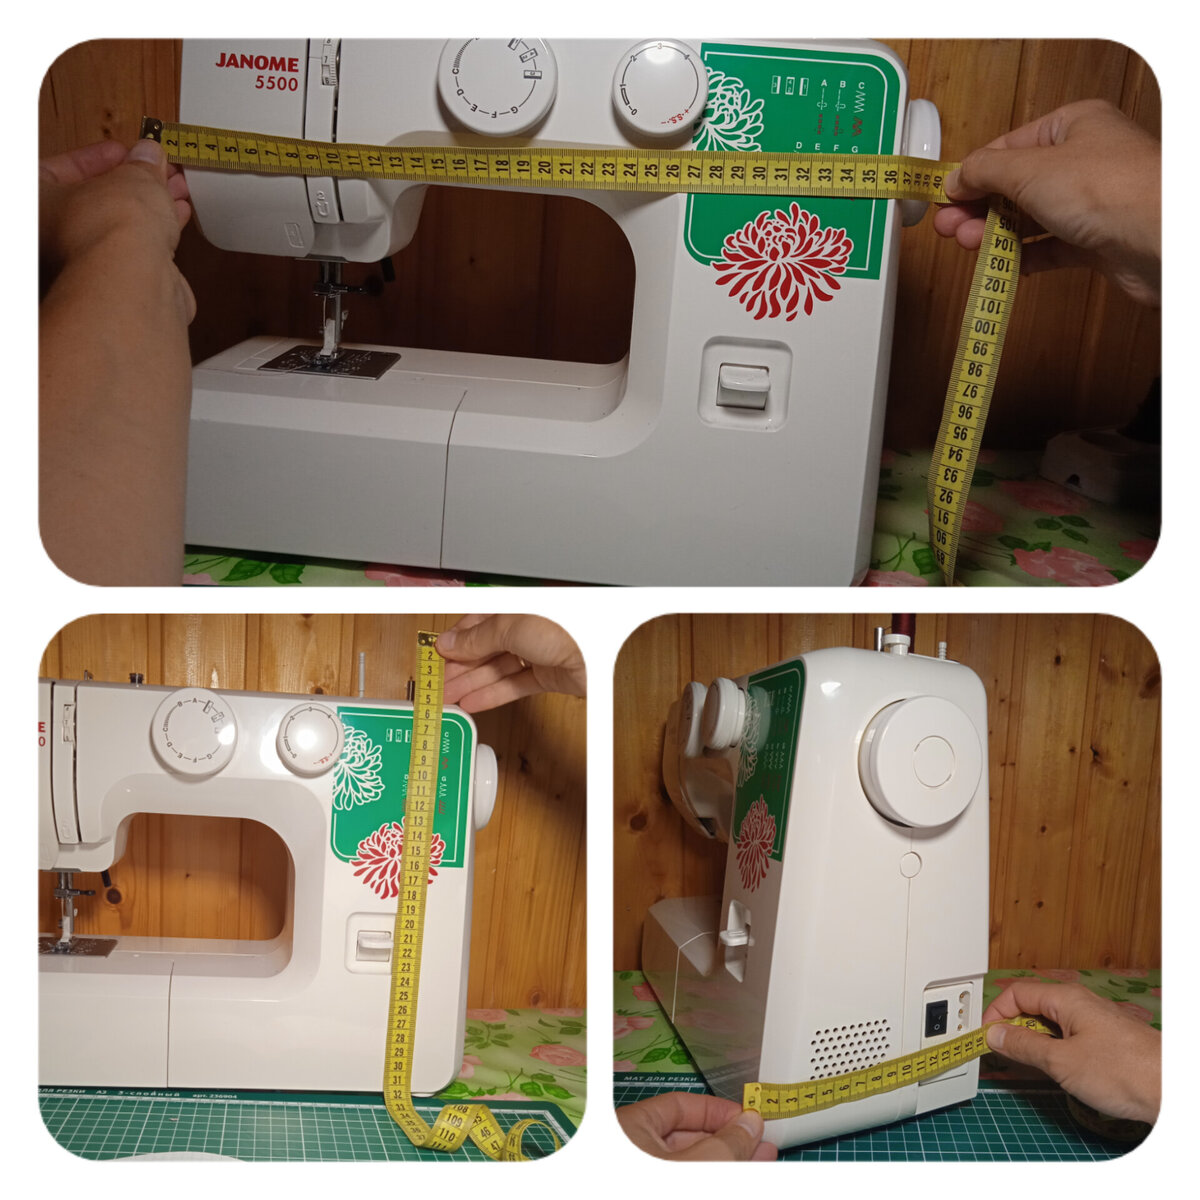 Чехол для швейной машины: как сделать выкройку и сшить своими руками